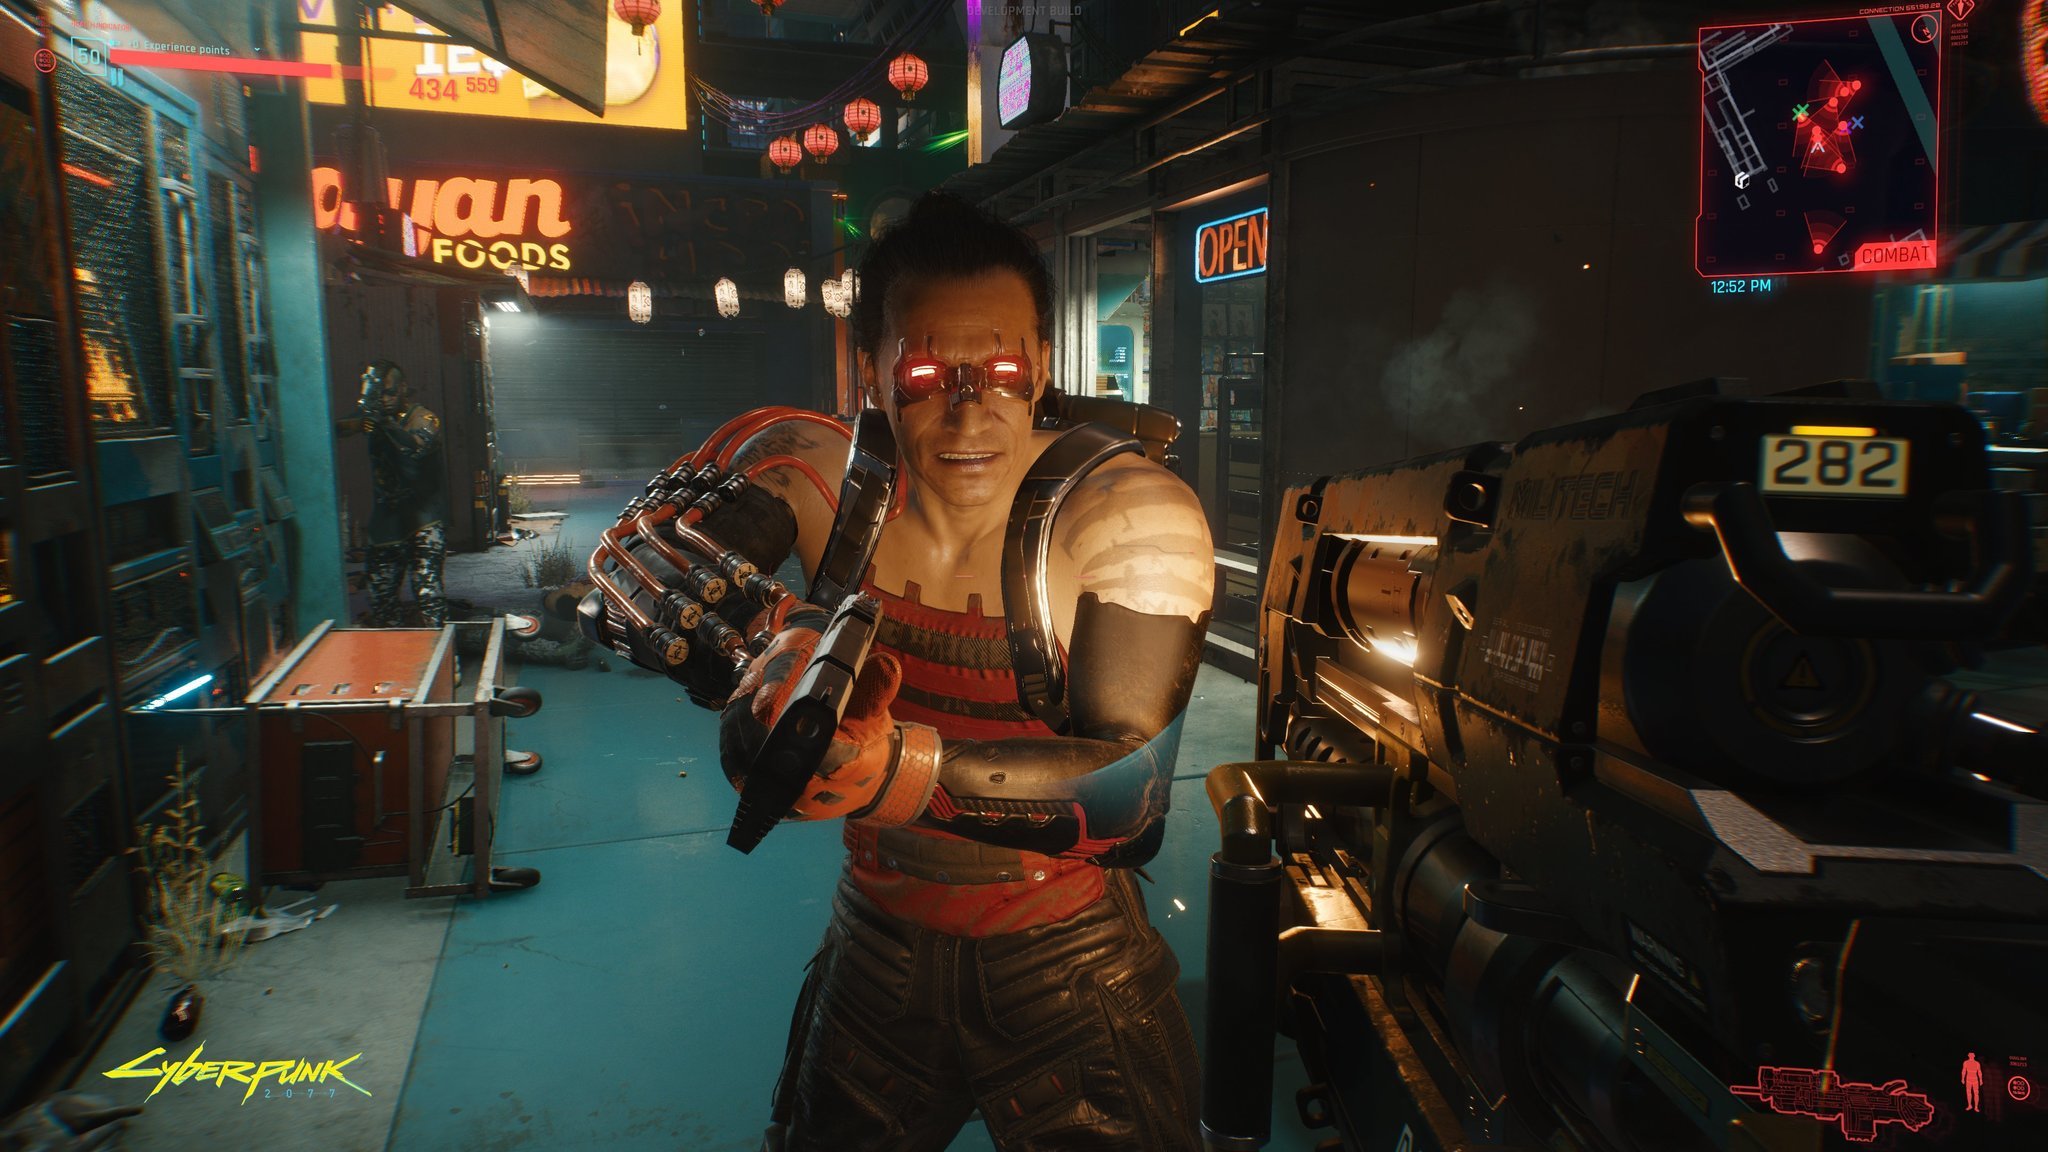 cyberpunk-2077-big-gun-alley-screenshot.jpg